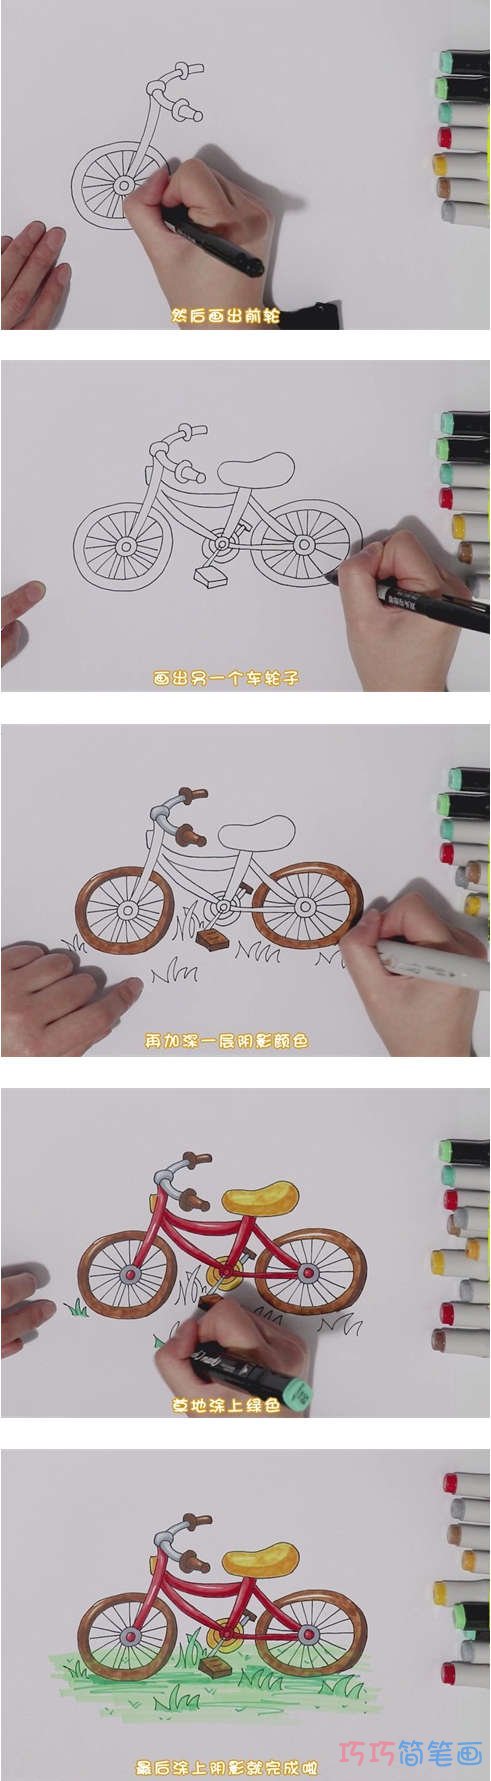 教你怎么画儿童自行车简笔画步骤教程涂色